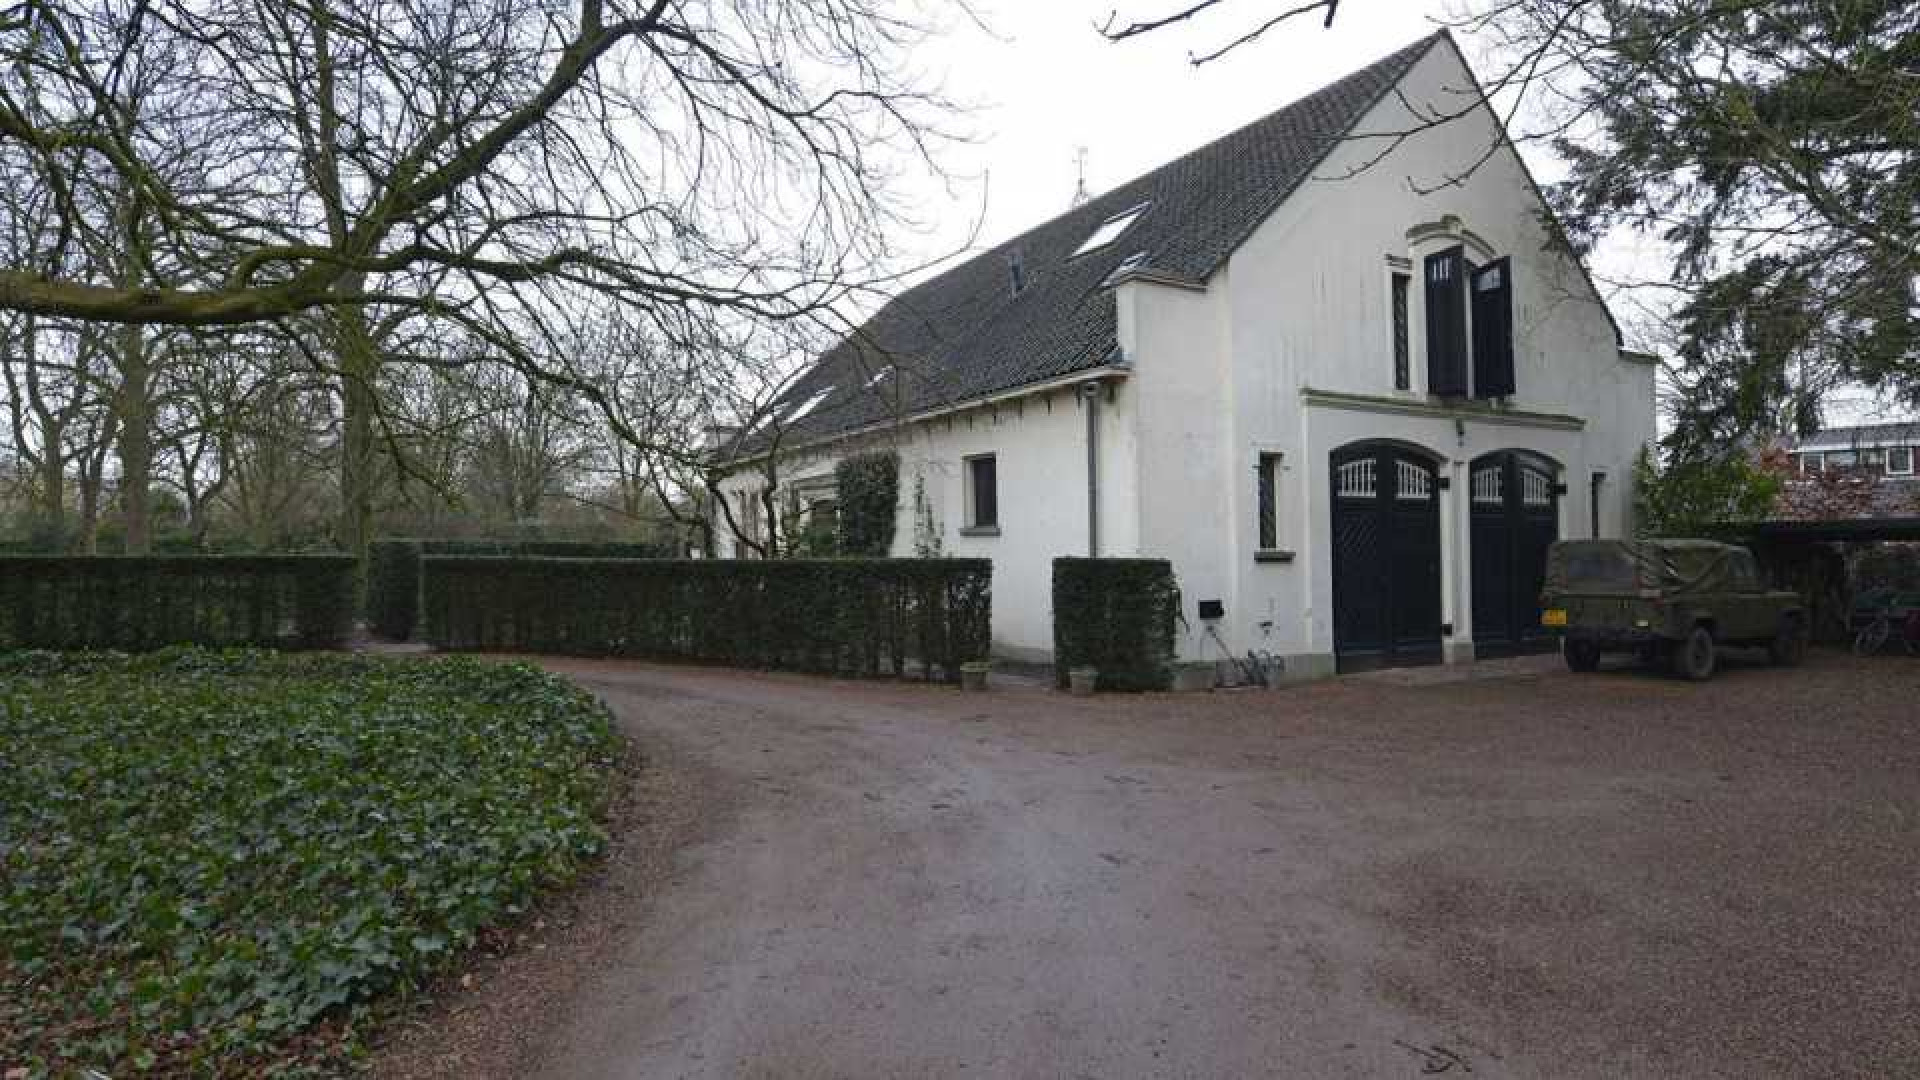 Prinses Irene zet haar prachtige landhuis in Wijk bij Duurstede te koop. Zie foto's 15